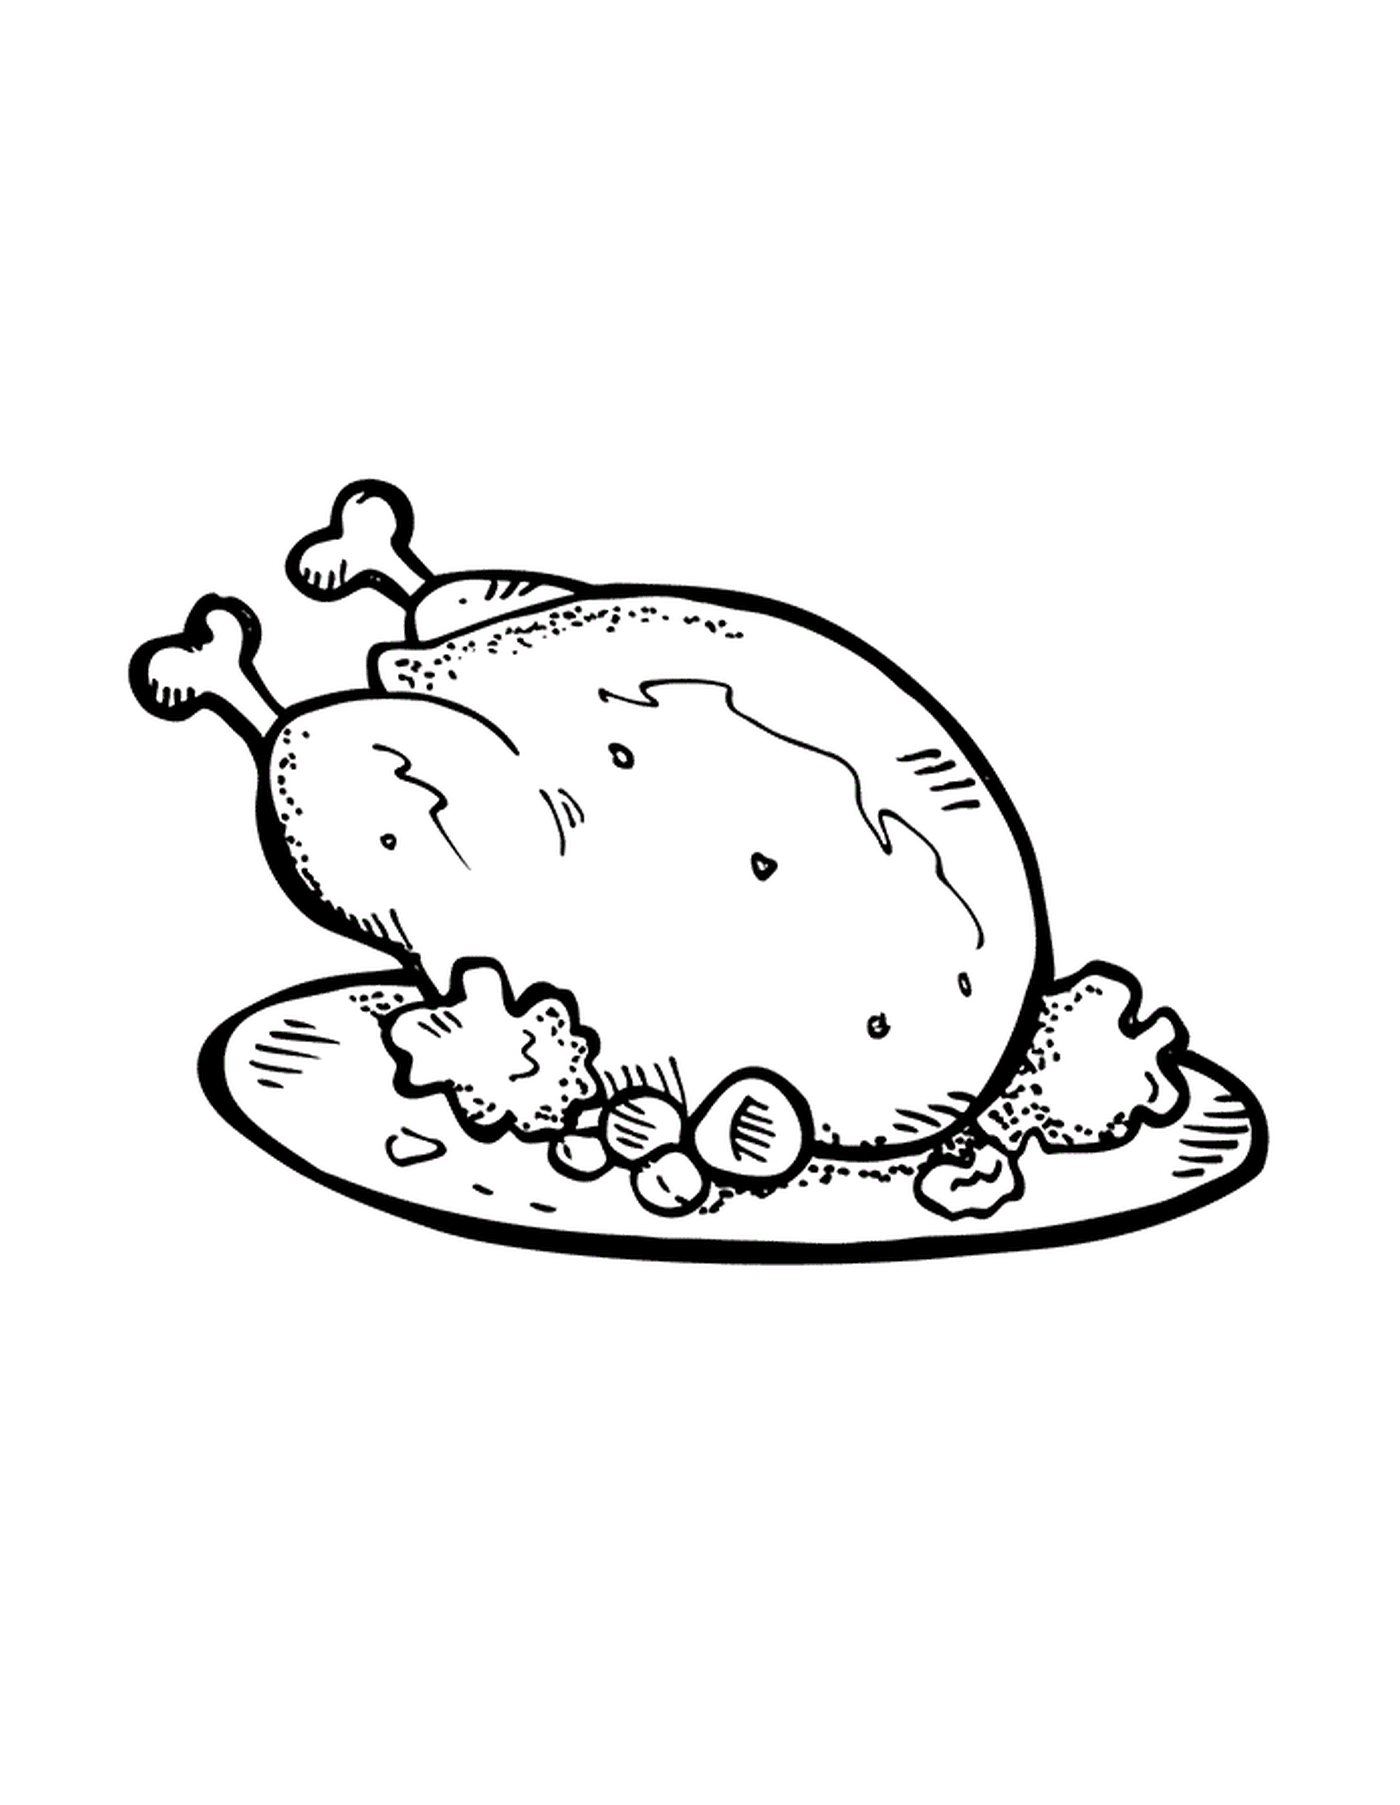  Ein Huhn auf einem Teller 